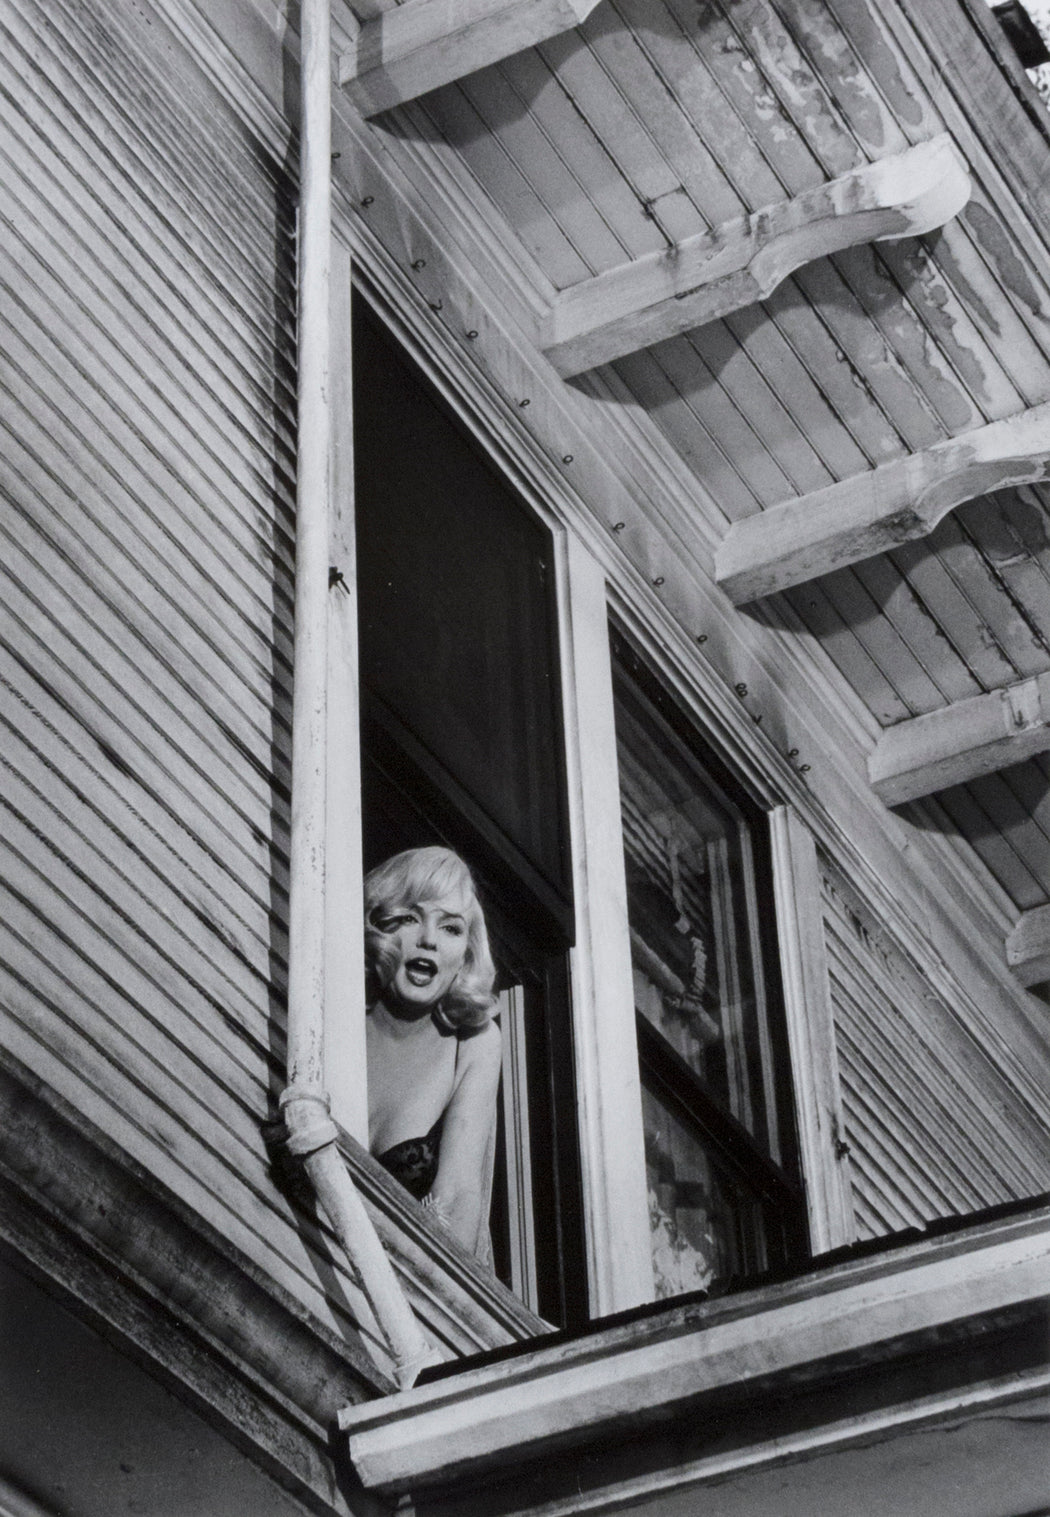 FFOTO-Inge Morath-Filming of “The Misfits”, Marilyn Monroe